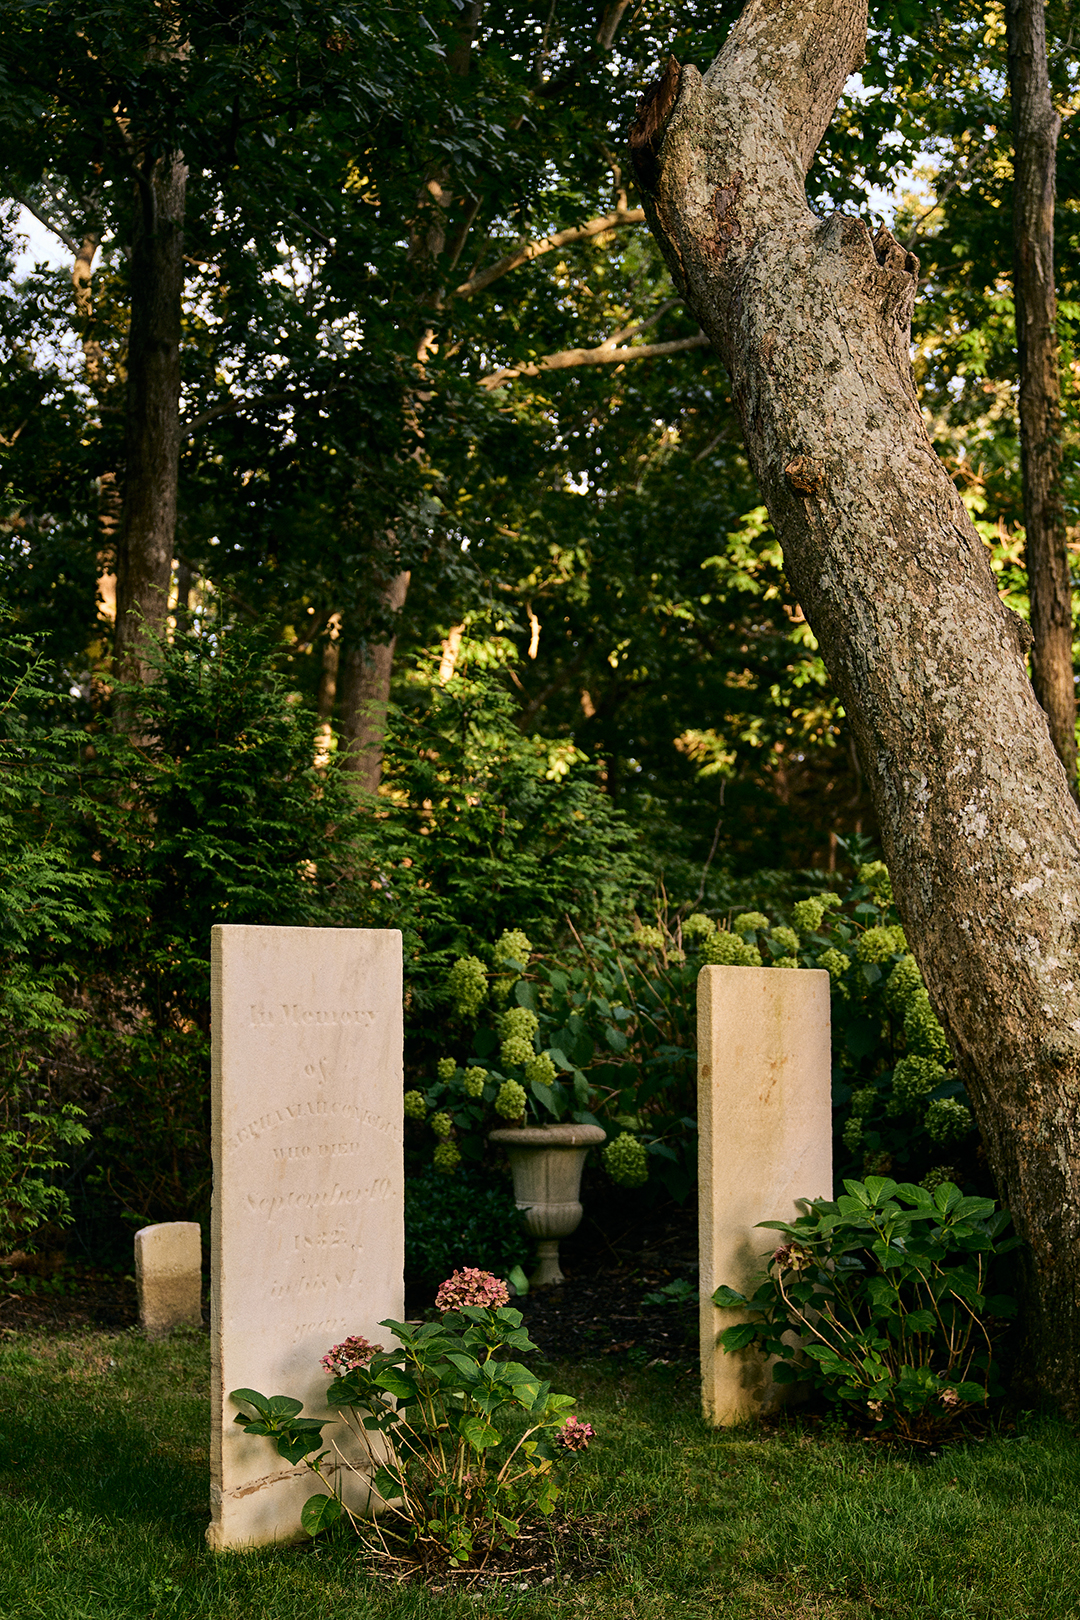 Headstones in a backyard graveyard